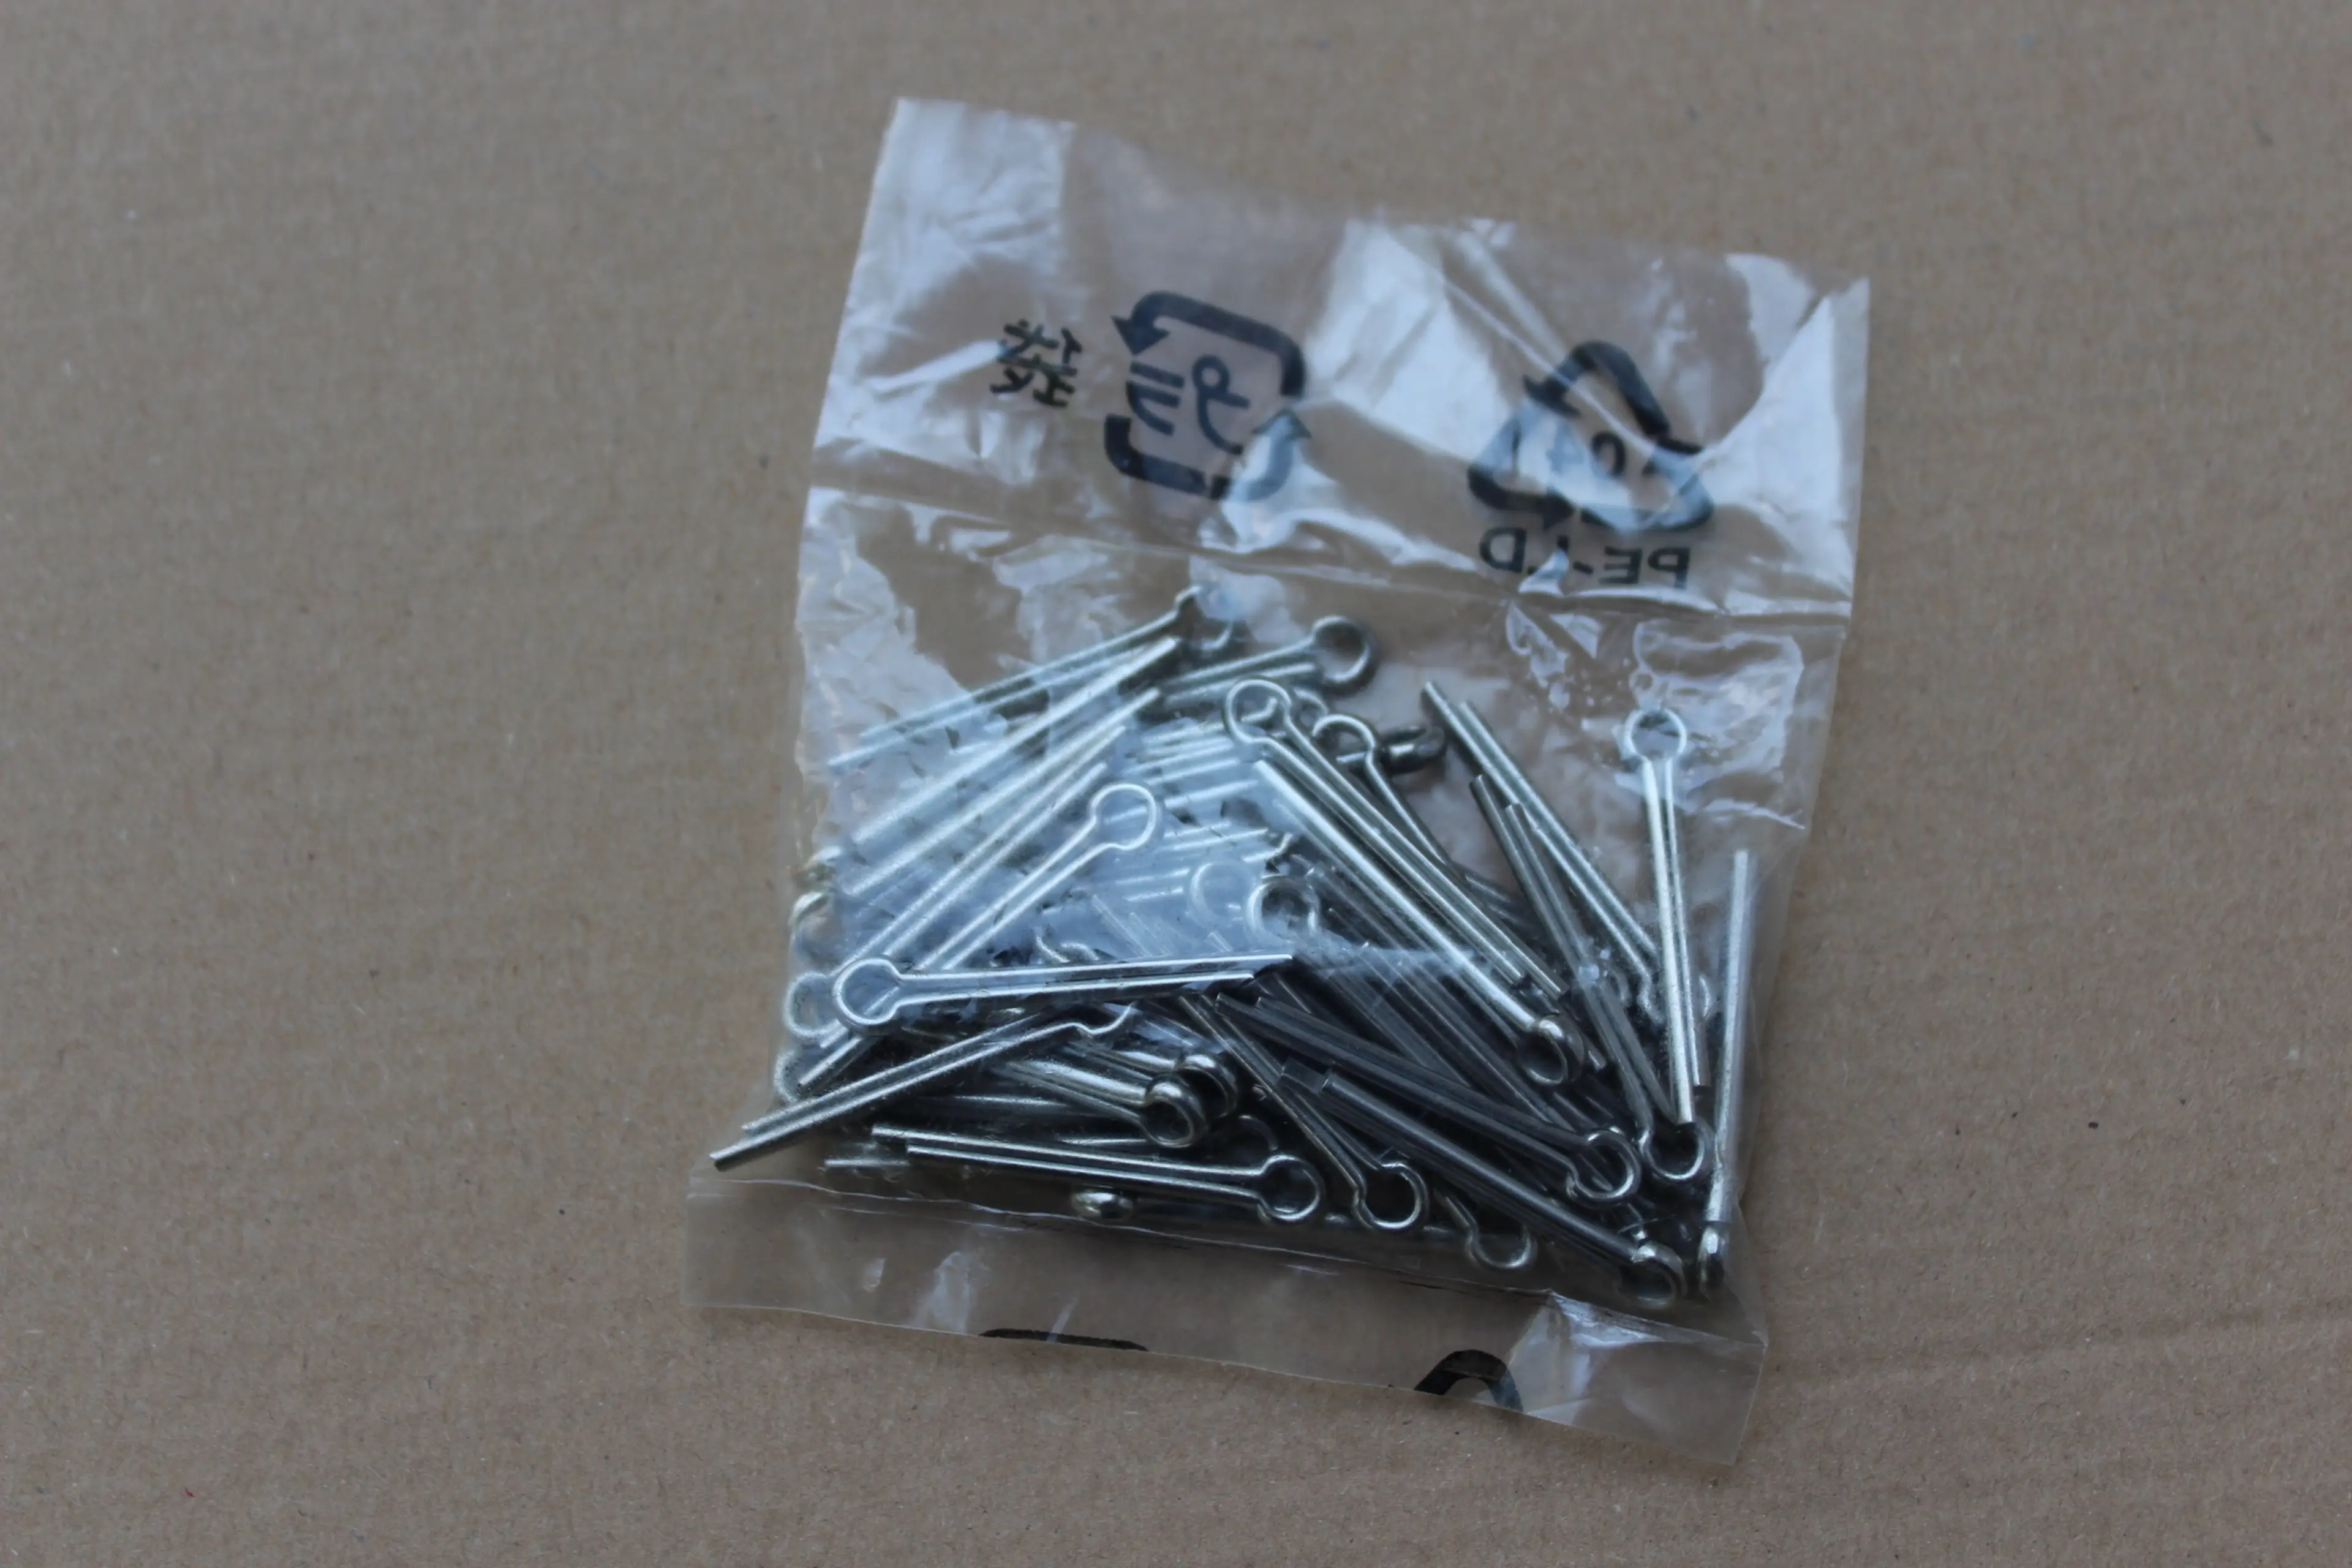 1. Pin Shimano pentru placute frana - 50buc.